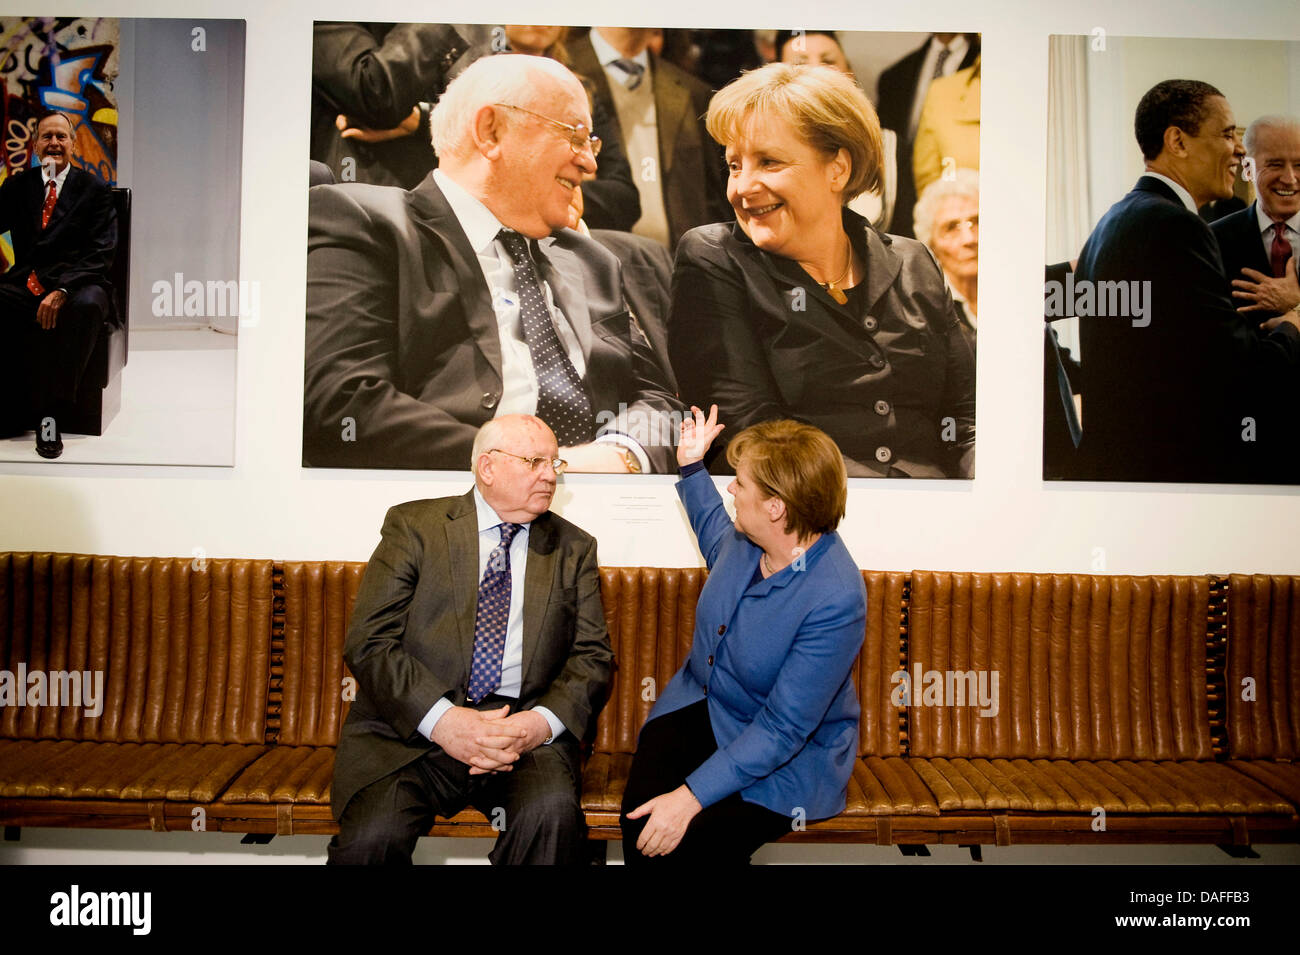 Der ehemalige sowjetische Präsident Mikhail Gorbachev und Bundeskanzlerin Angela Merkel nehmen Sie Platz unter eine große Foto-Druck von sich selbst an der John-F.-Kennedy-Museum am Pariser Platz in Berlin, Deutschland, 24. Februar 2011. Foto: JESCO DENZEL Stockfoto